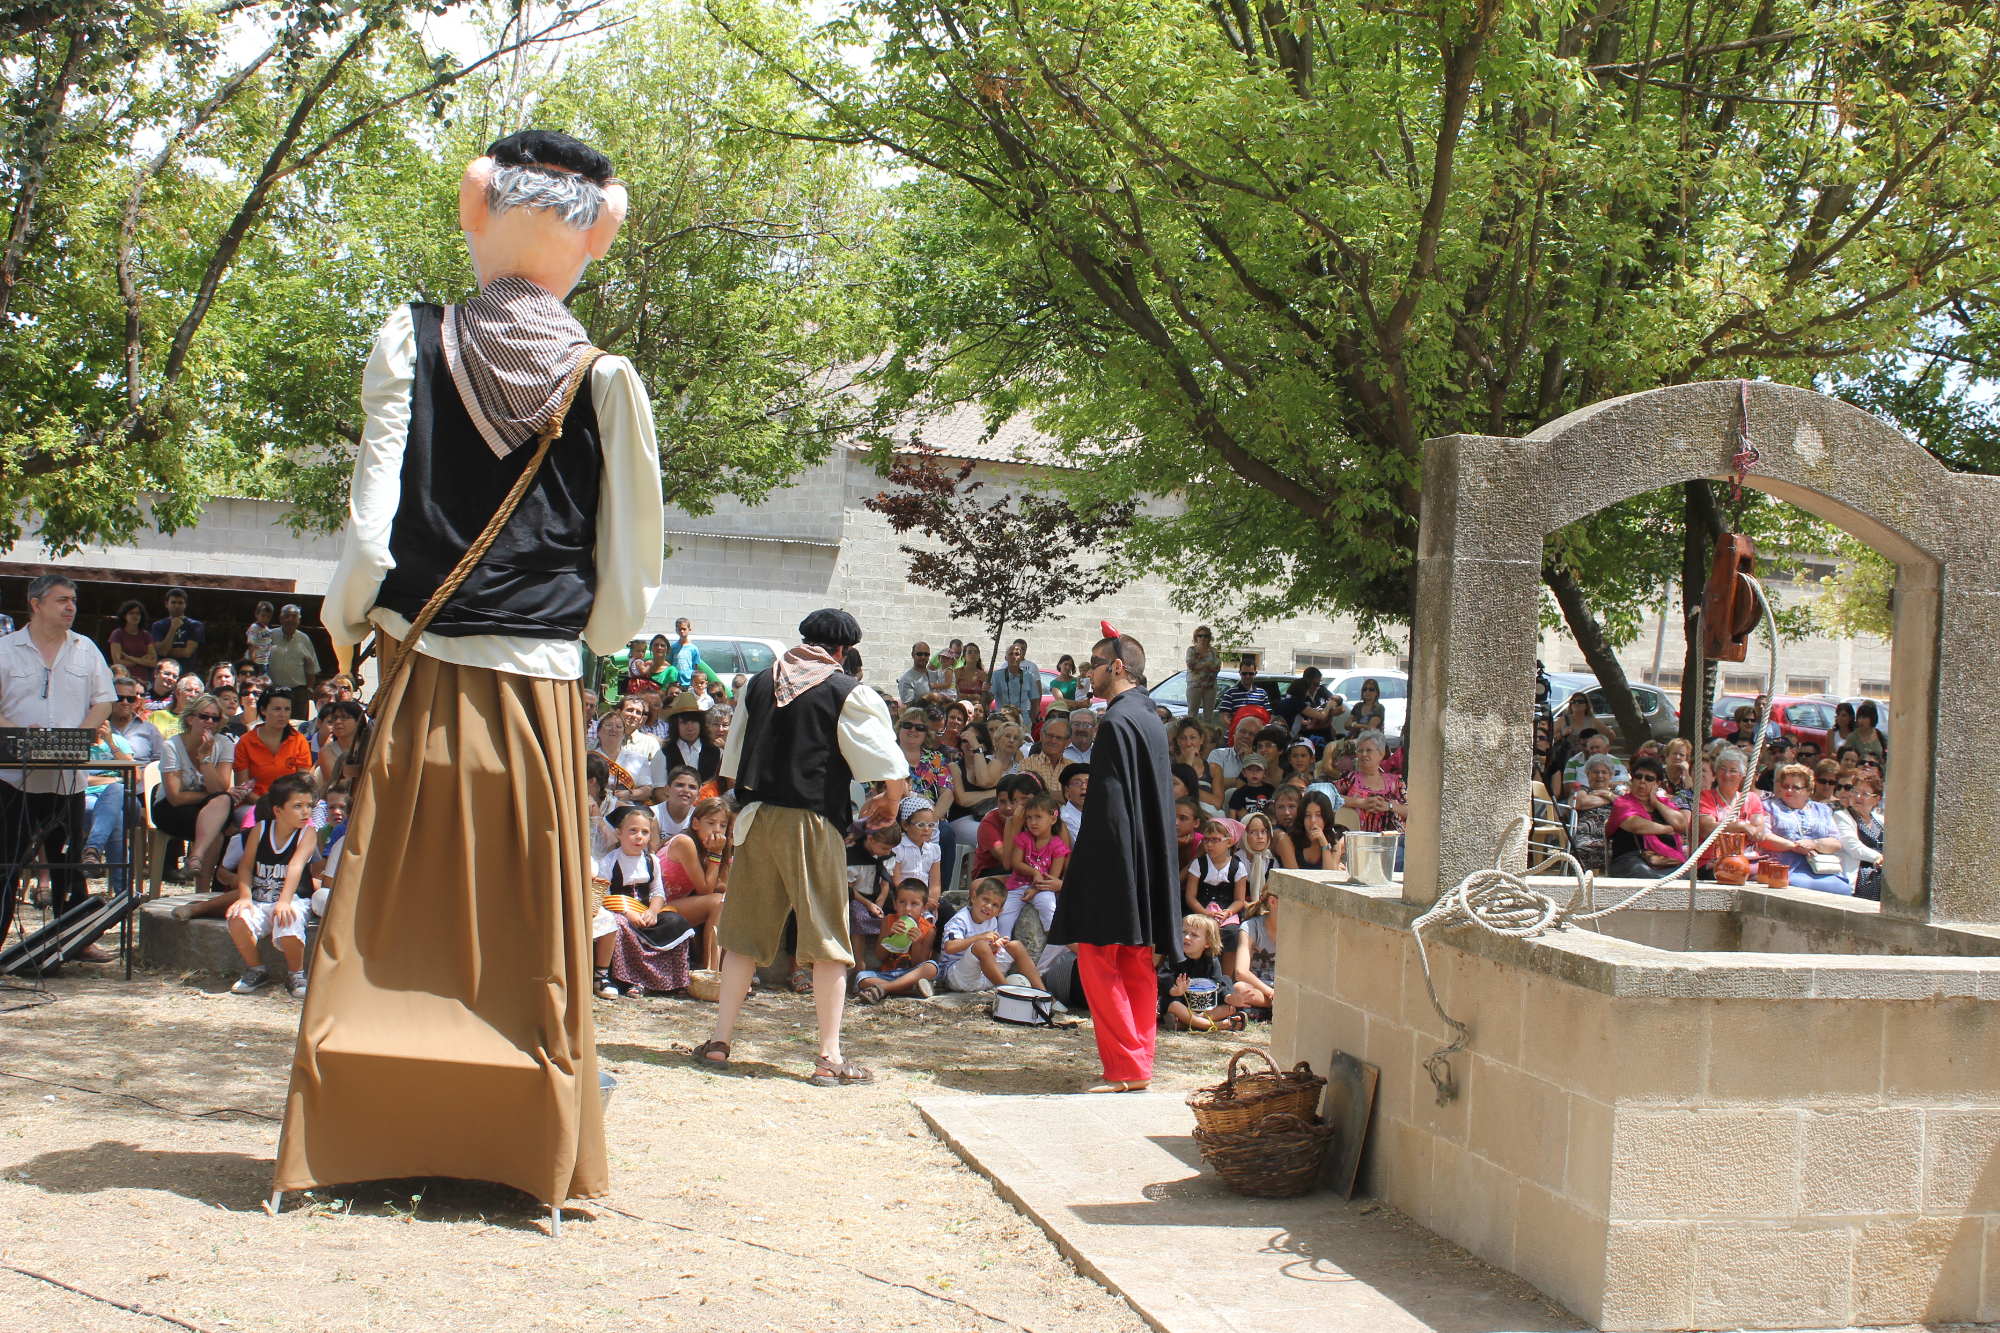 La representació de la llegenda dle Pou Bo, un dels actes concorreguts de la festa